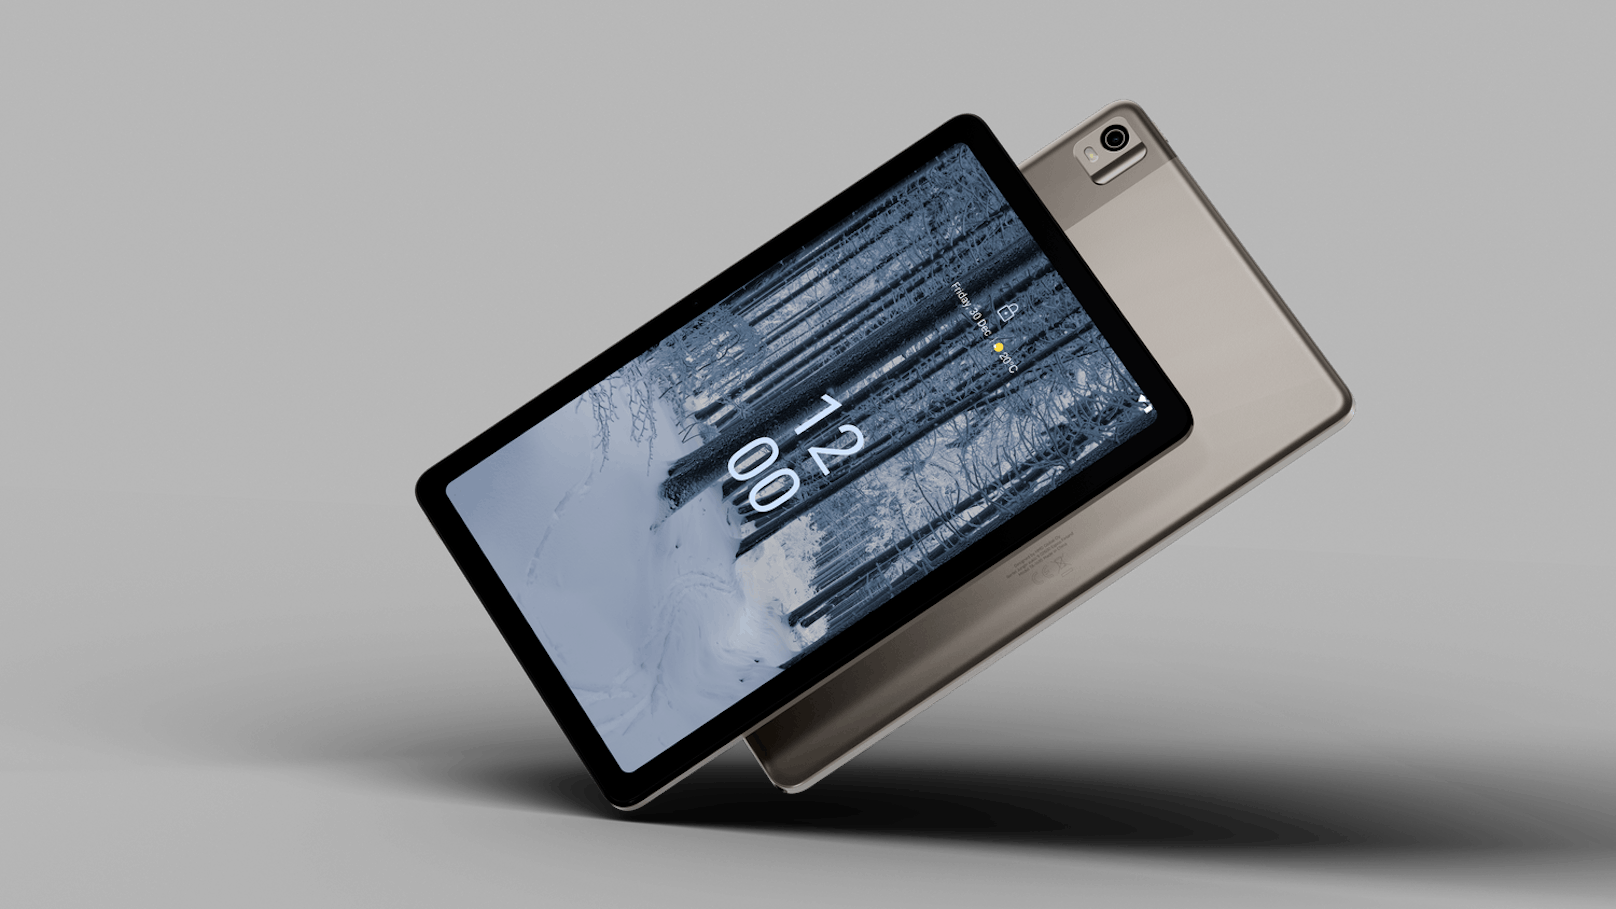 Familien-Tablet Nokia T21 mit Stylus-Unterstützung ist ab sofort verfügbar.